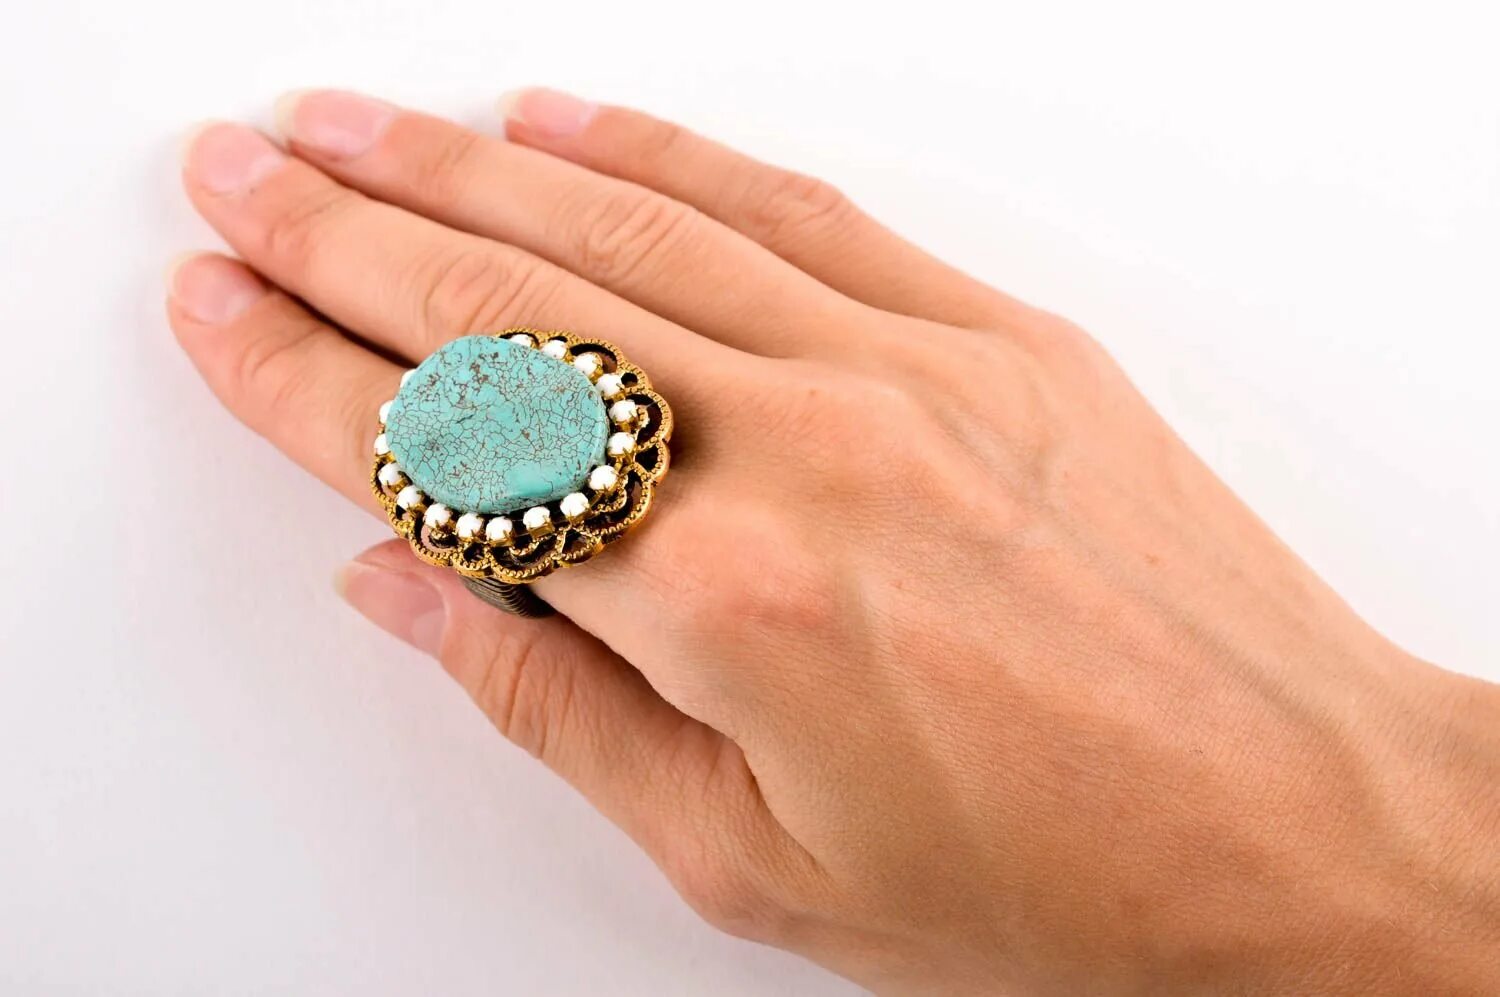 Купить женские кольца камнями. Крупные кольца. Кольцо с крупным камнем. Крупные кольца бижутерия. Массивное кольцо с камнем.